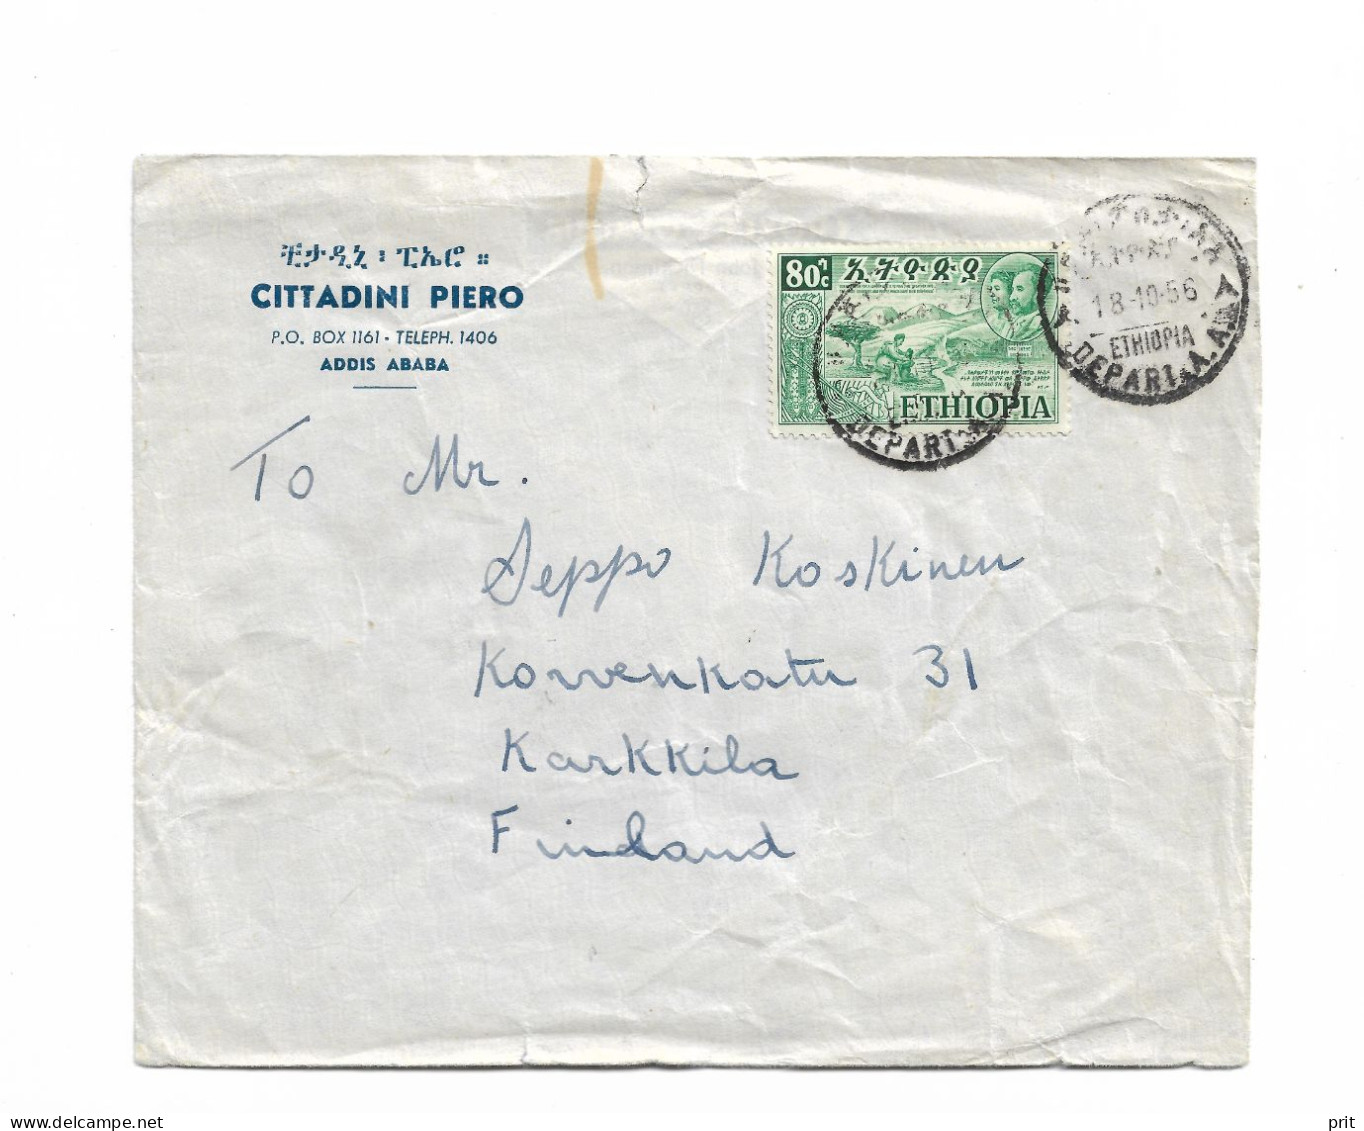 Addis Ababa Ethiopia Cover To Karkkila, Finland 1956 - Ethiopia